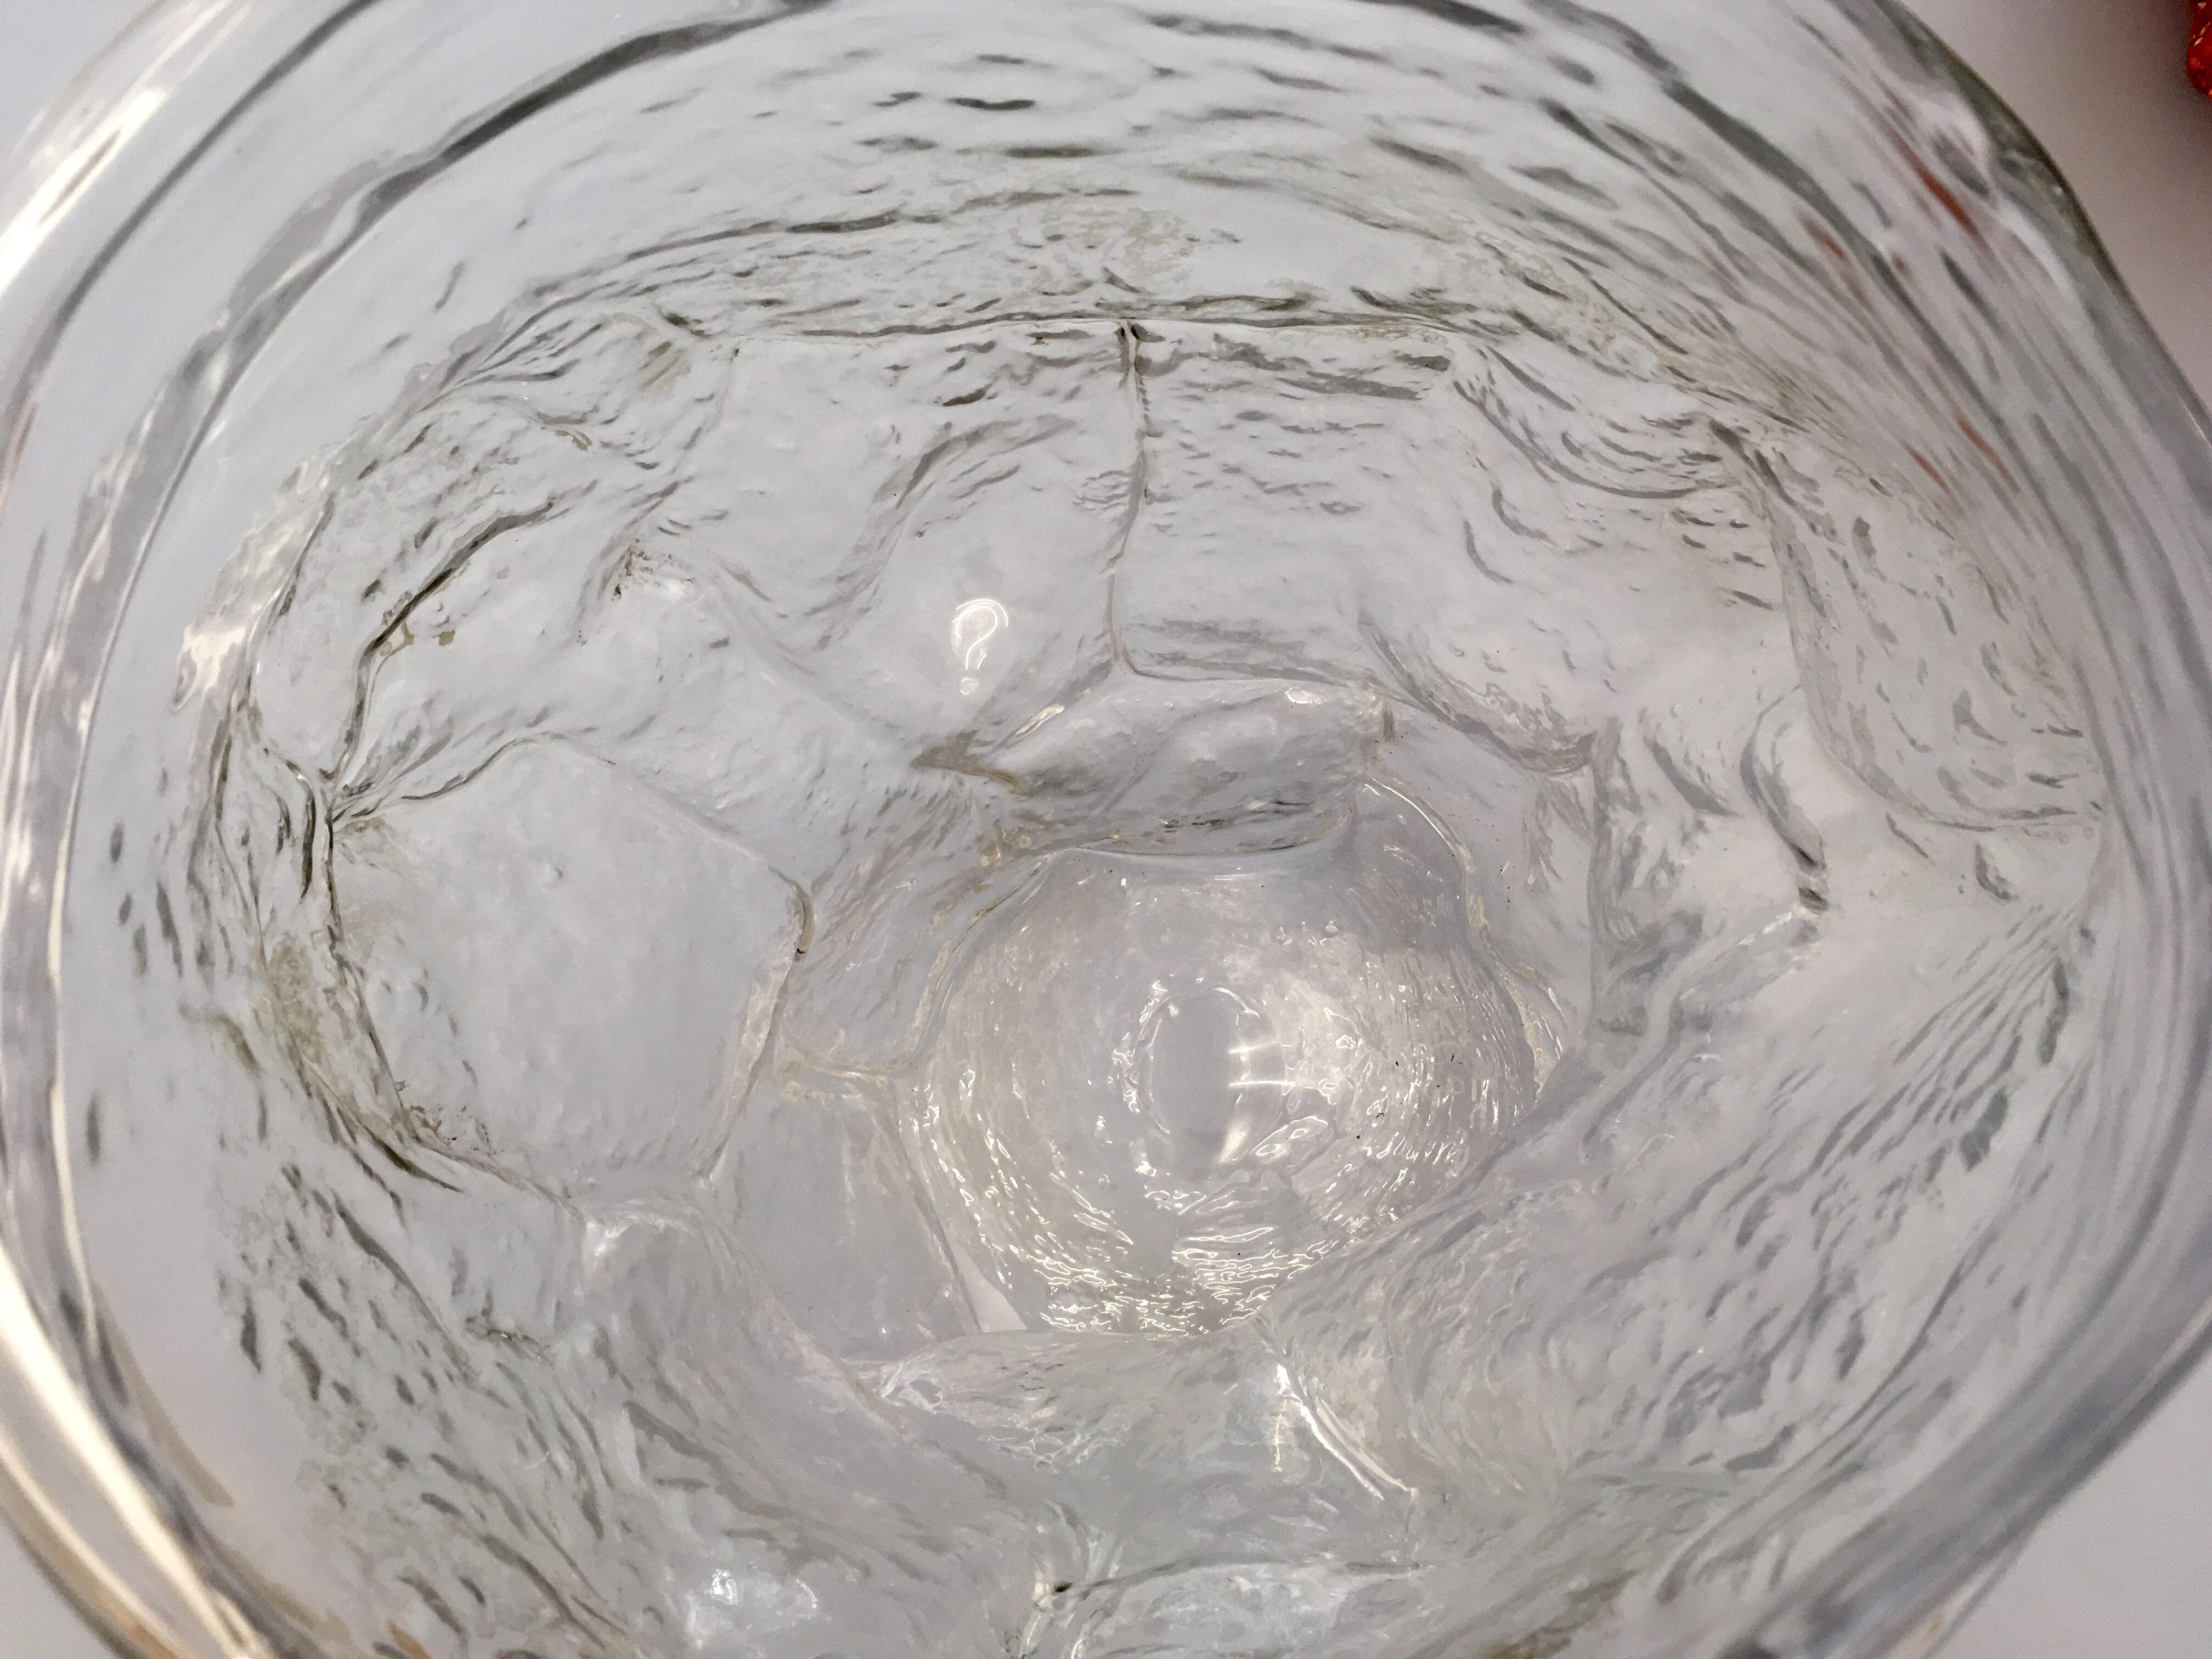 Geformtes und anschließend mundgeblasenes Glas

Einzigartig

Die Vasen Mountain von FOS verkörpern die Oberfläche des Berges, kalibriert auf die Größe der menschlichen Innenräume. FOS erklärt: 